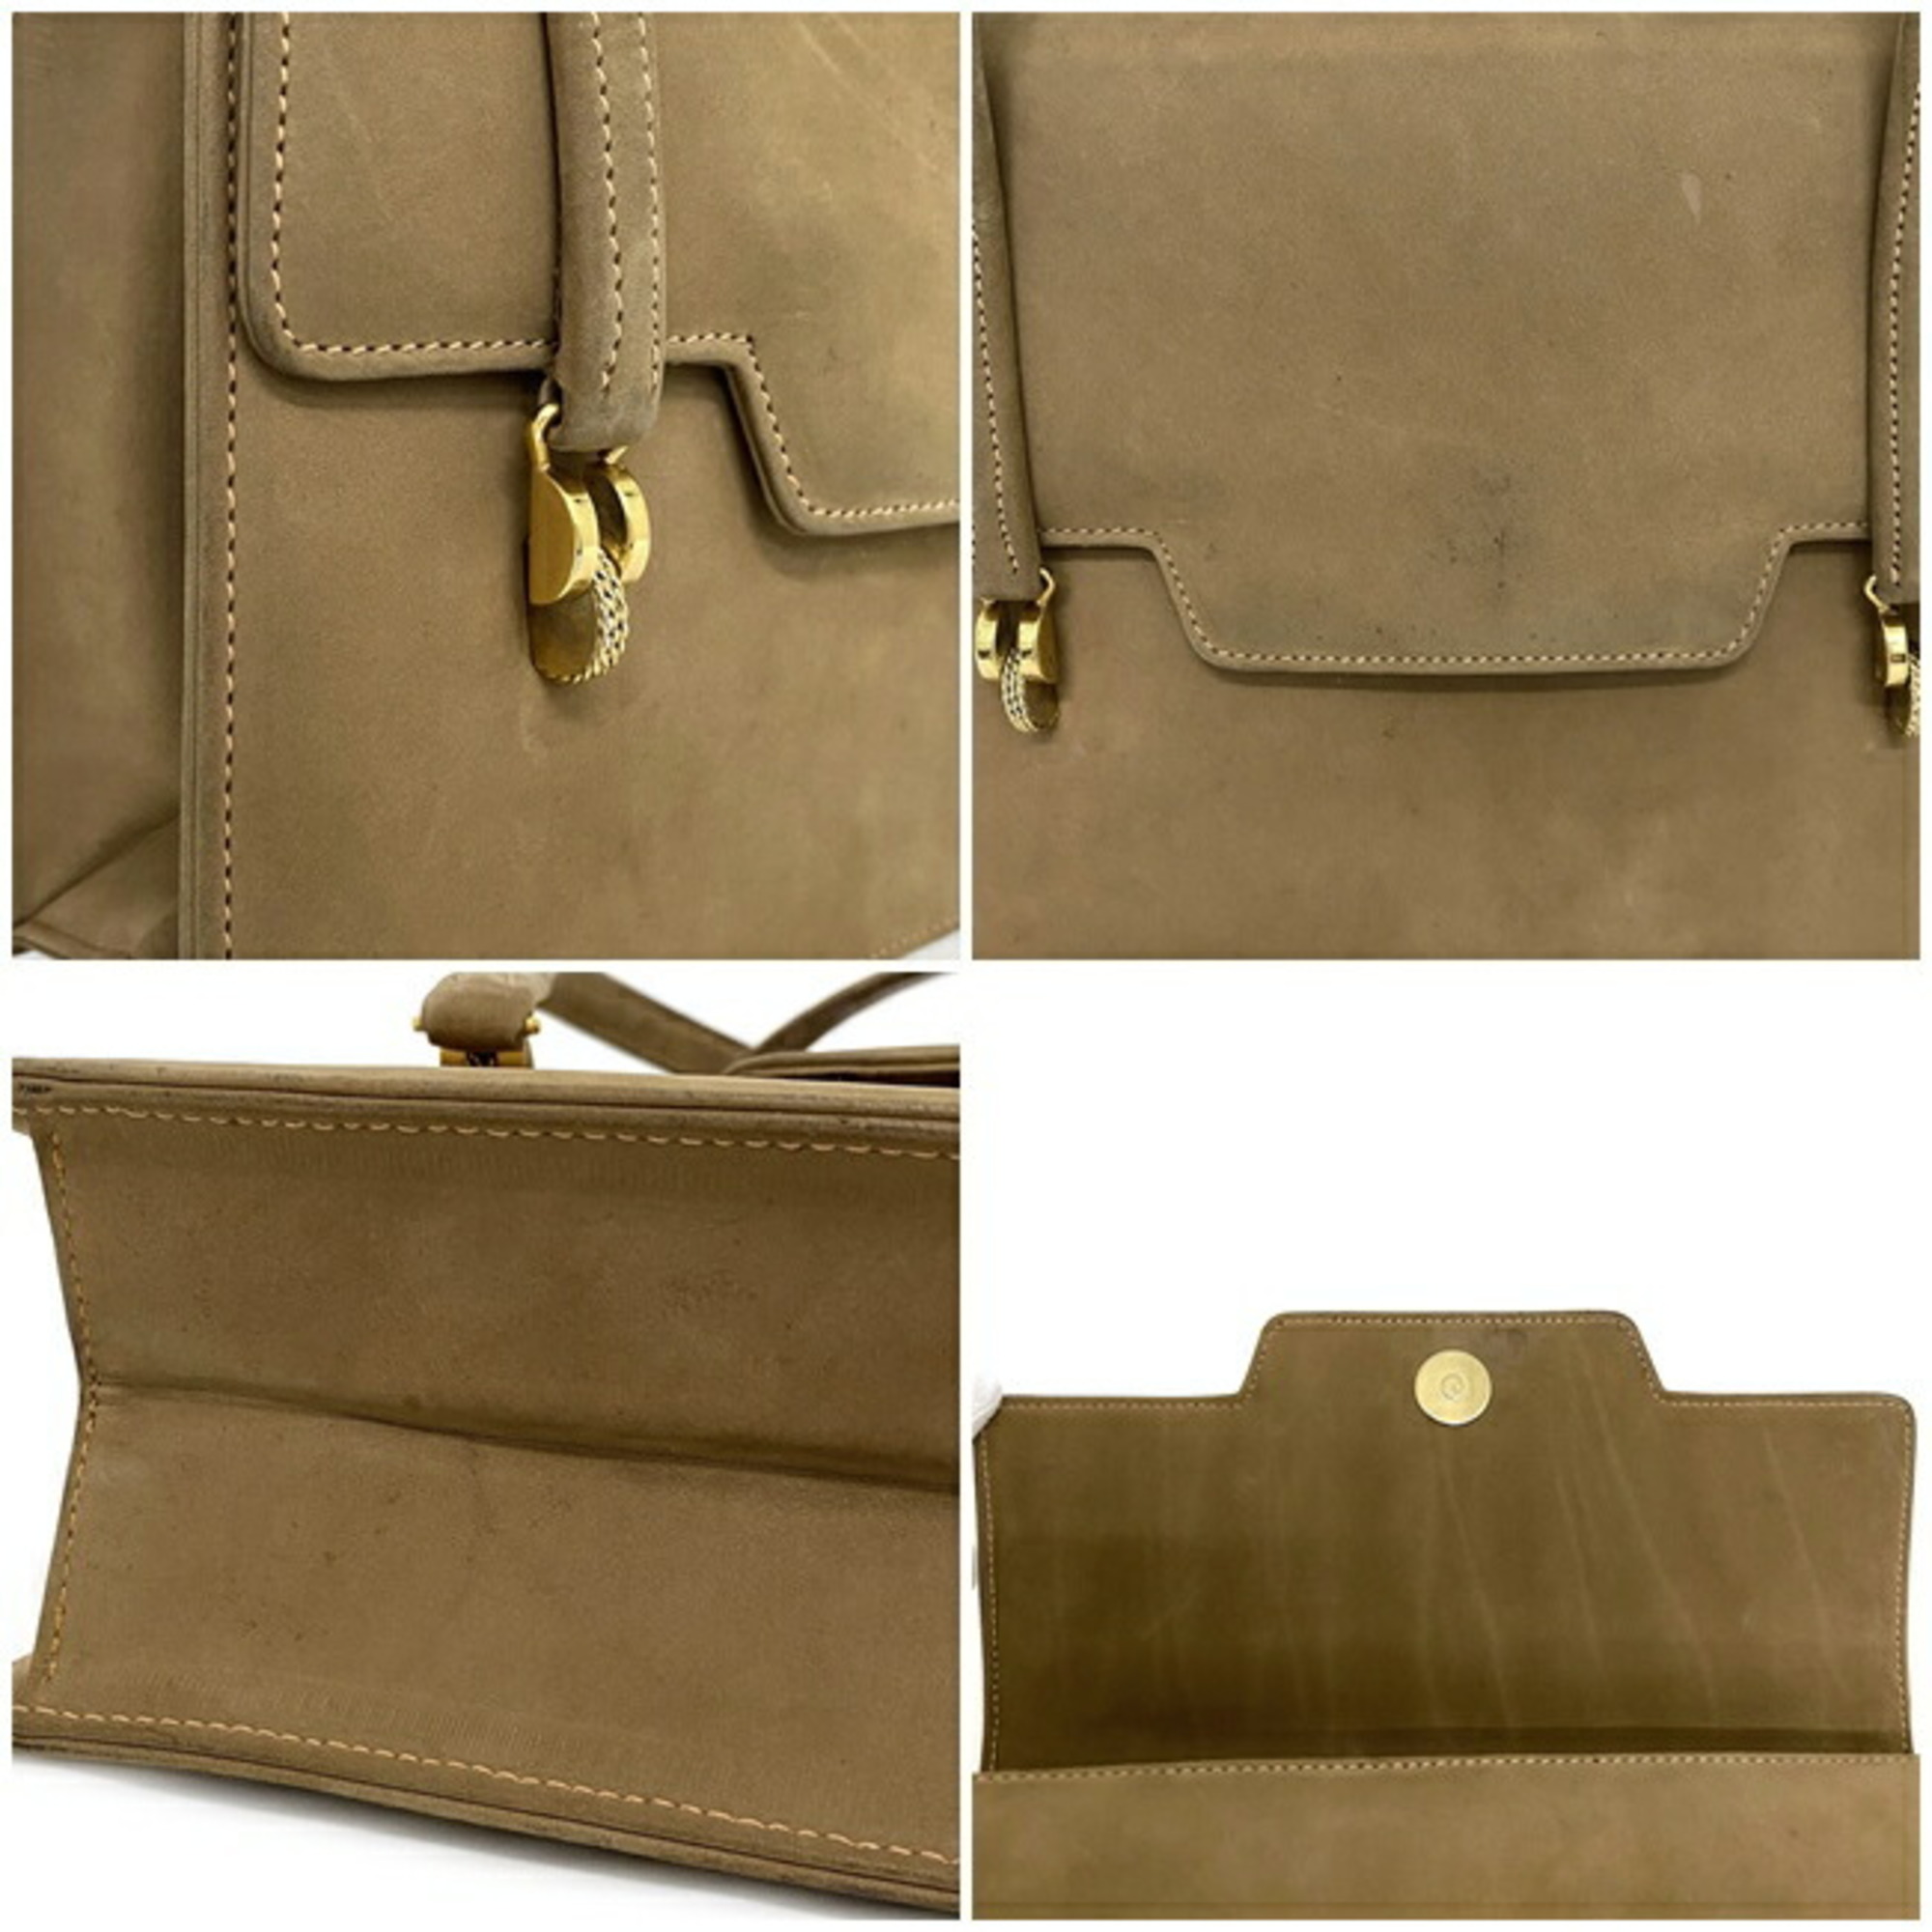 Gucci Handbag Beige Gold Histeria Suede GUCCI Flap Mini Bag Ladies